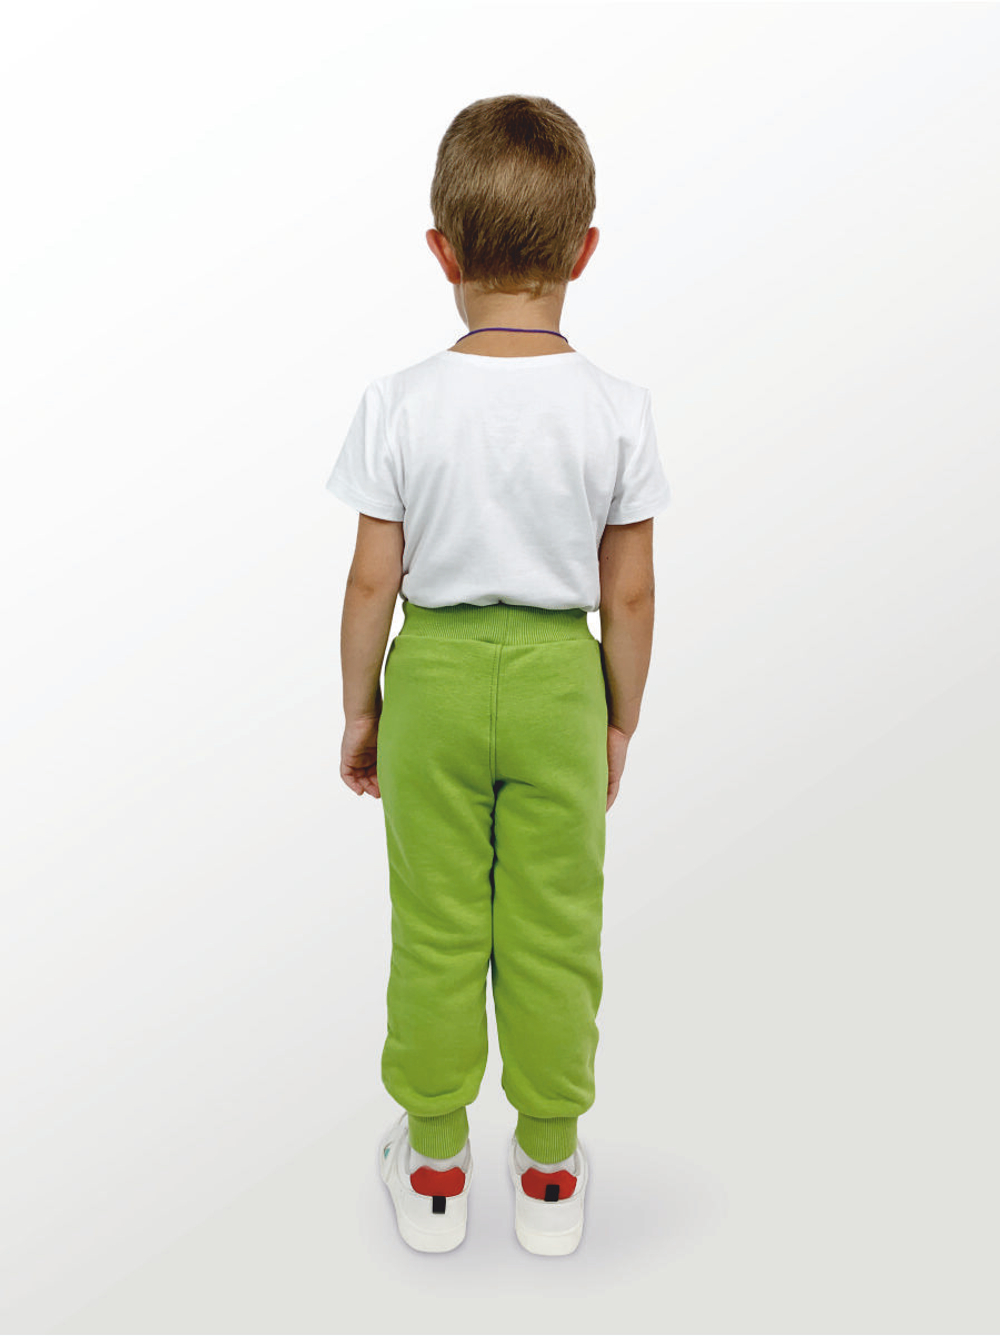 Брюки для детей, модель №2 (джоггеры), рост 98 см, зеленые